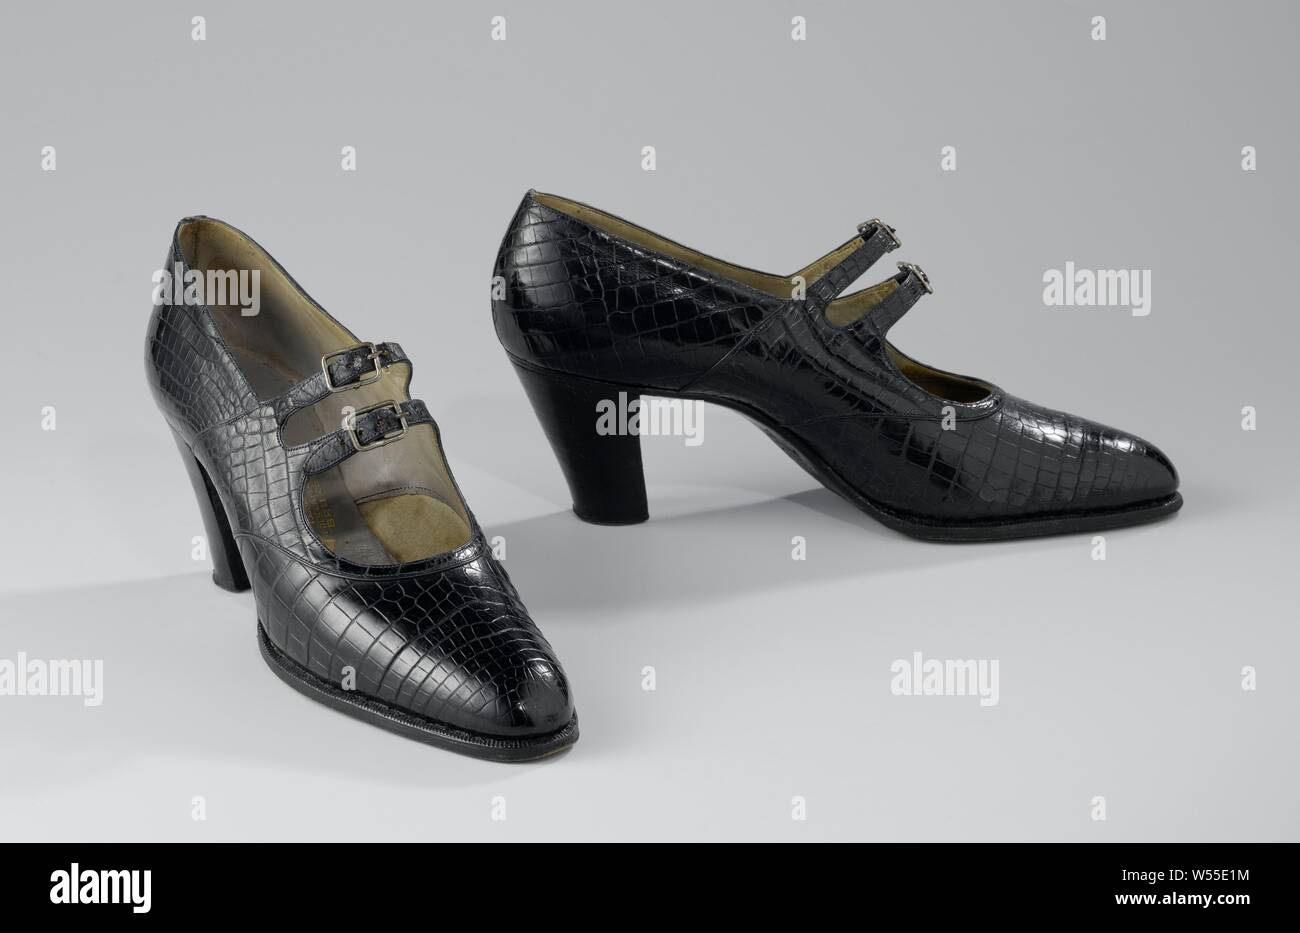 Paar Schuhe mit Riemen Riemen Schuh blau Krokoleder schwarz, rechts Gurt Schuh blau Krokoleder schwarz mit Schnallenverschluss und hohen, unbeschichtete Ferse. Modell: Der Schuh ist eine Abdeckung an der Vorderseite, zwei Seitenteile mit zwei Riemen und Schnallen und zwei Ferse Panels. Die Seitenwände bilden ein schmales Band auf dem Vorfuß. Schließung in der Mitte des Rist mit Hilfe von zwei Gurten mit Platz, Schnallen. Die Naht ist durch ein schmales Band getarnt. Hoch (7 cm), unbeschichtete Leder an der Ferse. Der Vorderfuß ist mit natürlichen Farben Baumwolle ausgekleidet, der Rest mit grauem Leder. Einlegesohle Stockfoto